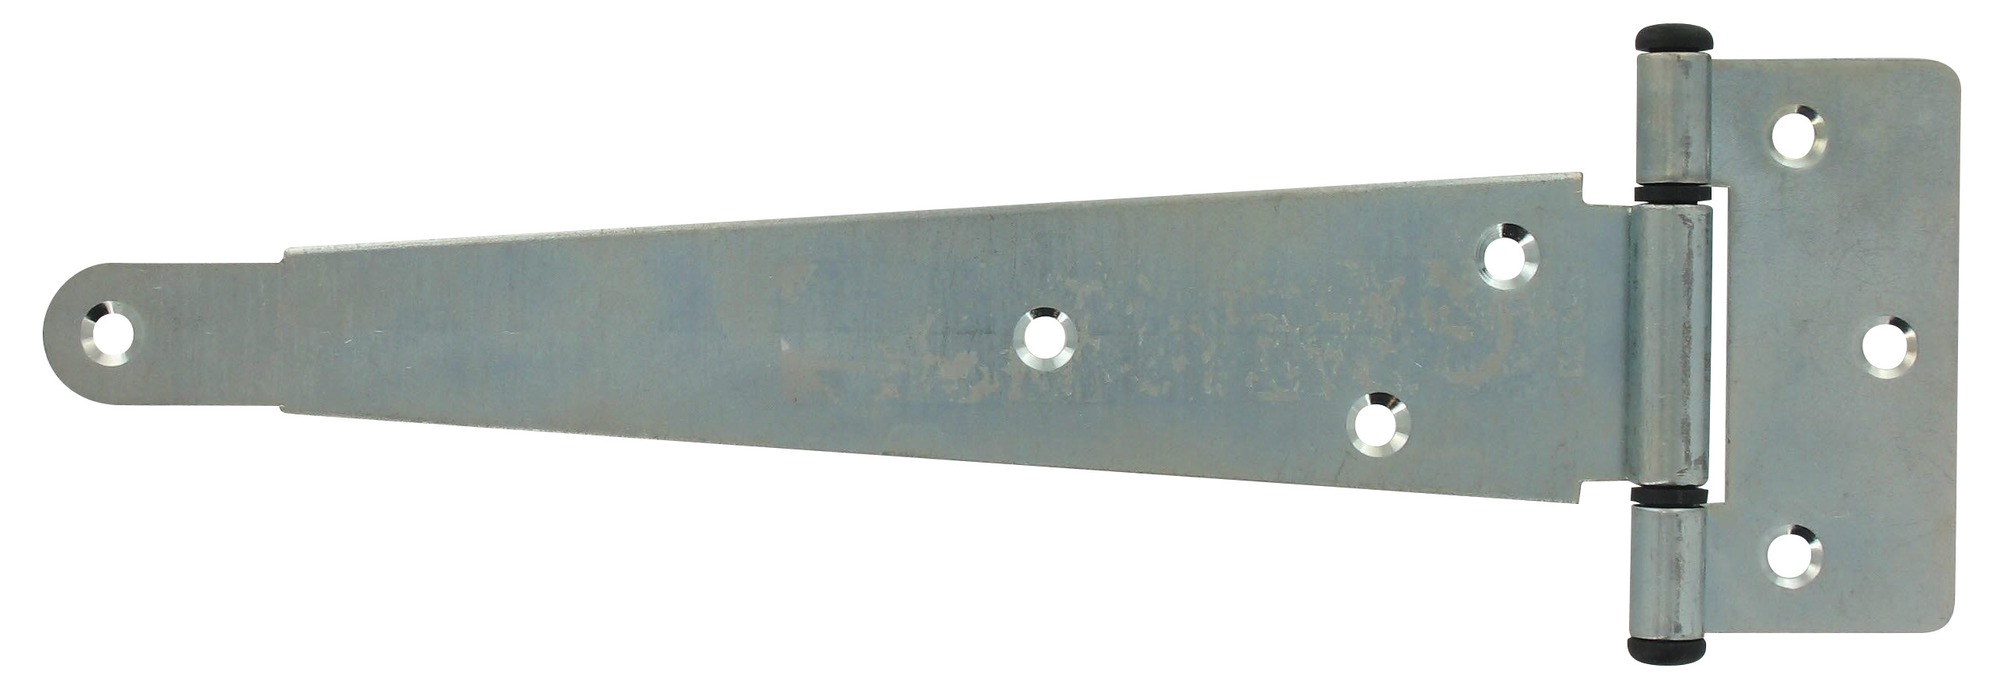 Penture anglaise acier zingué axe composite Mermier Quincaillerie - Longueur 60 cm